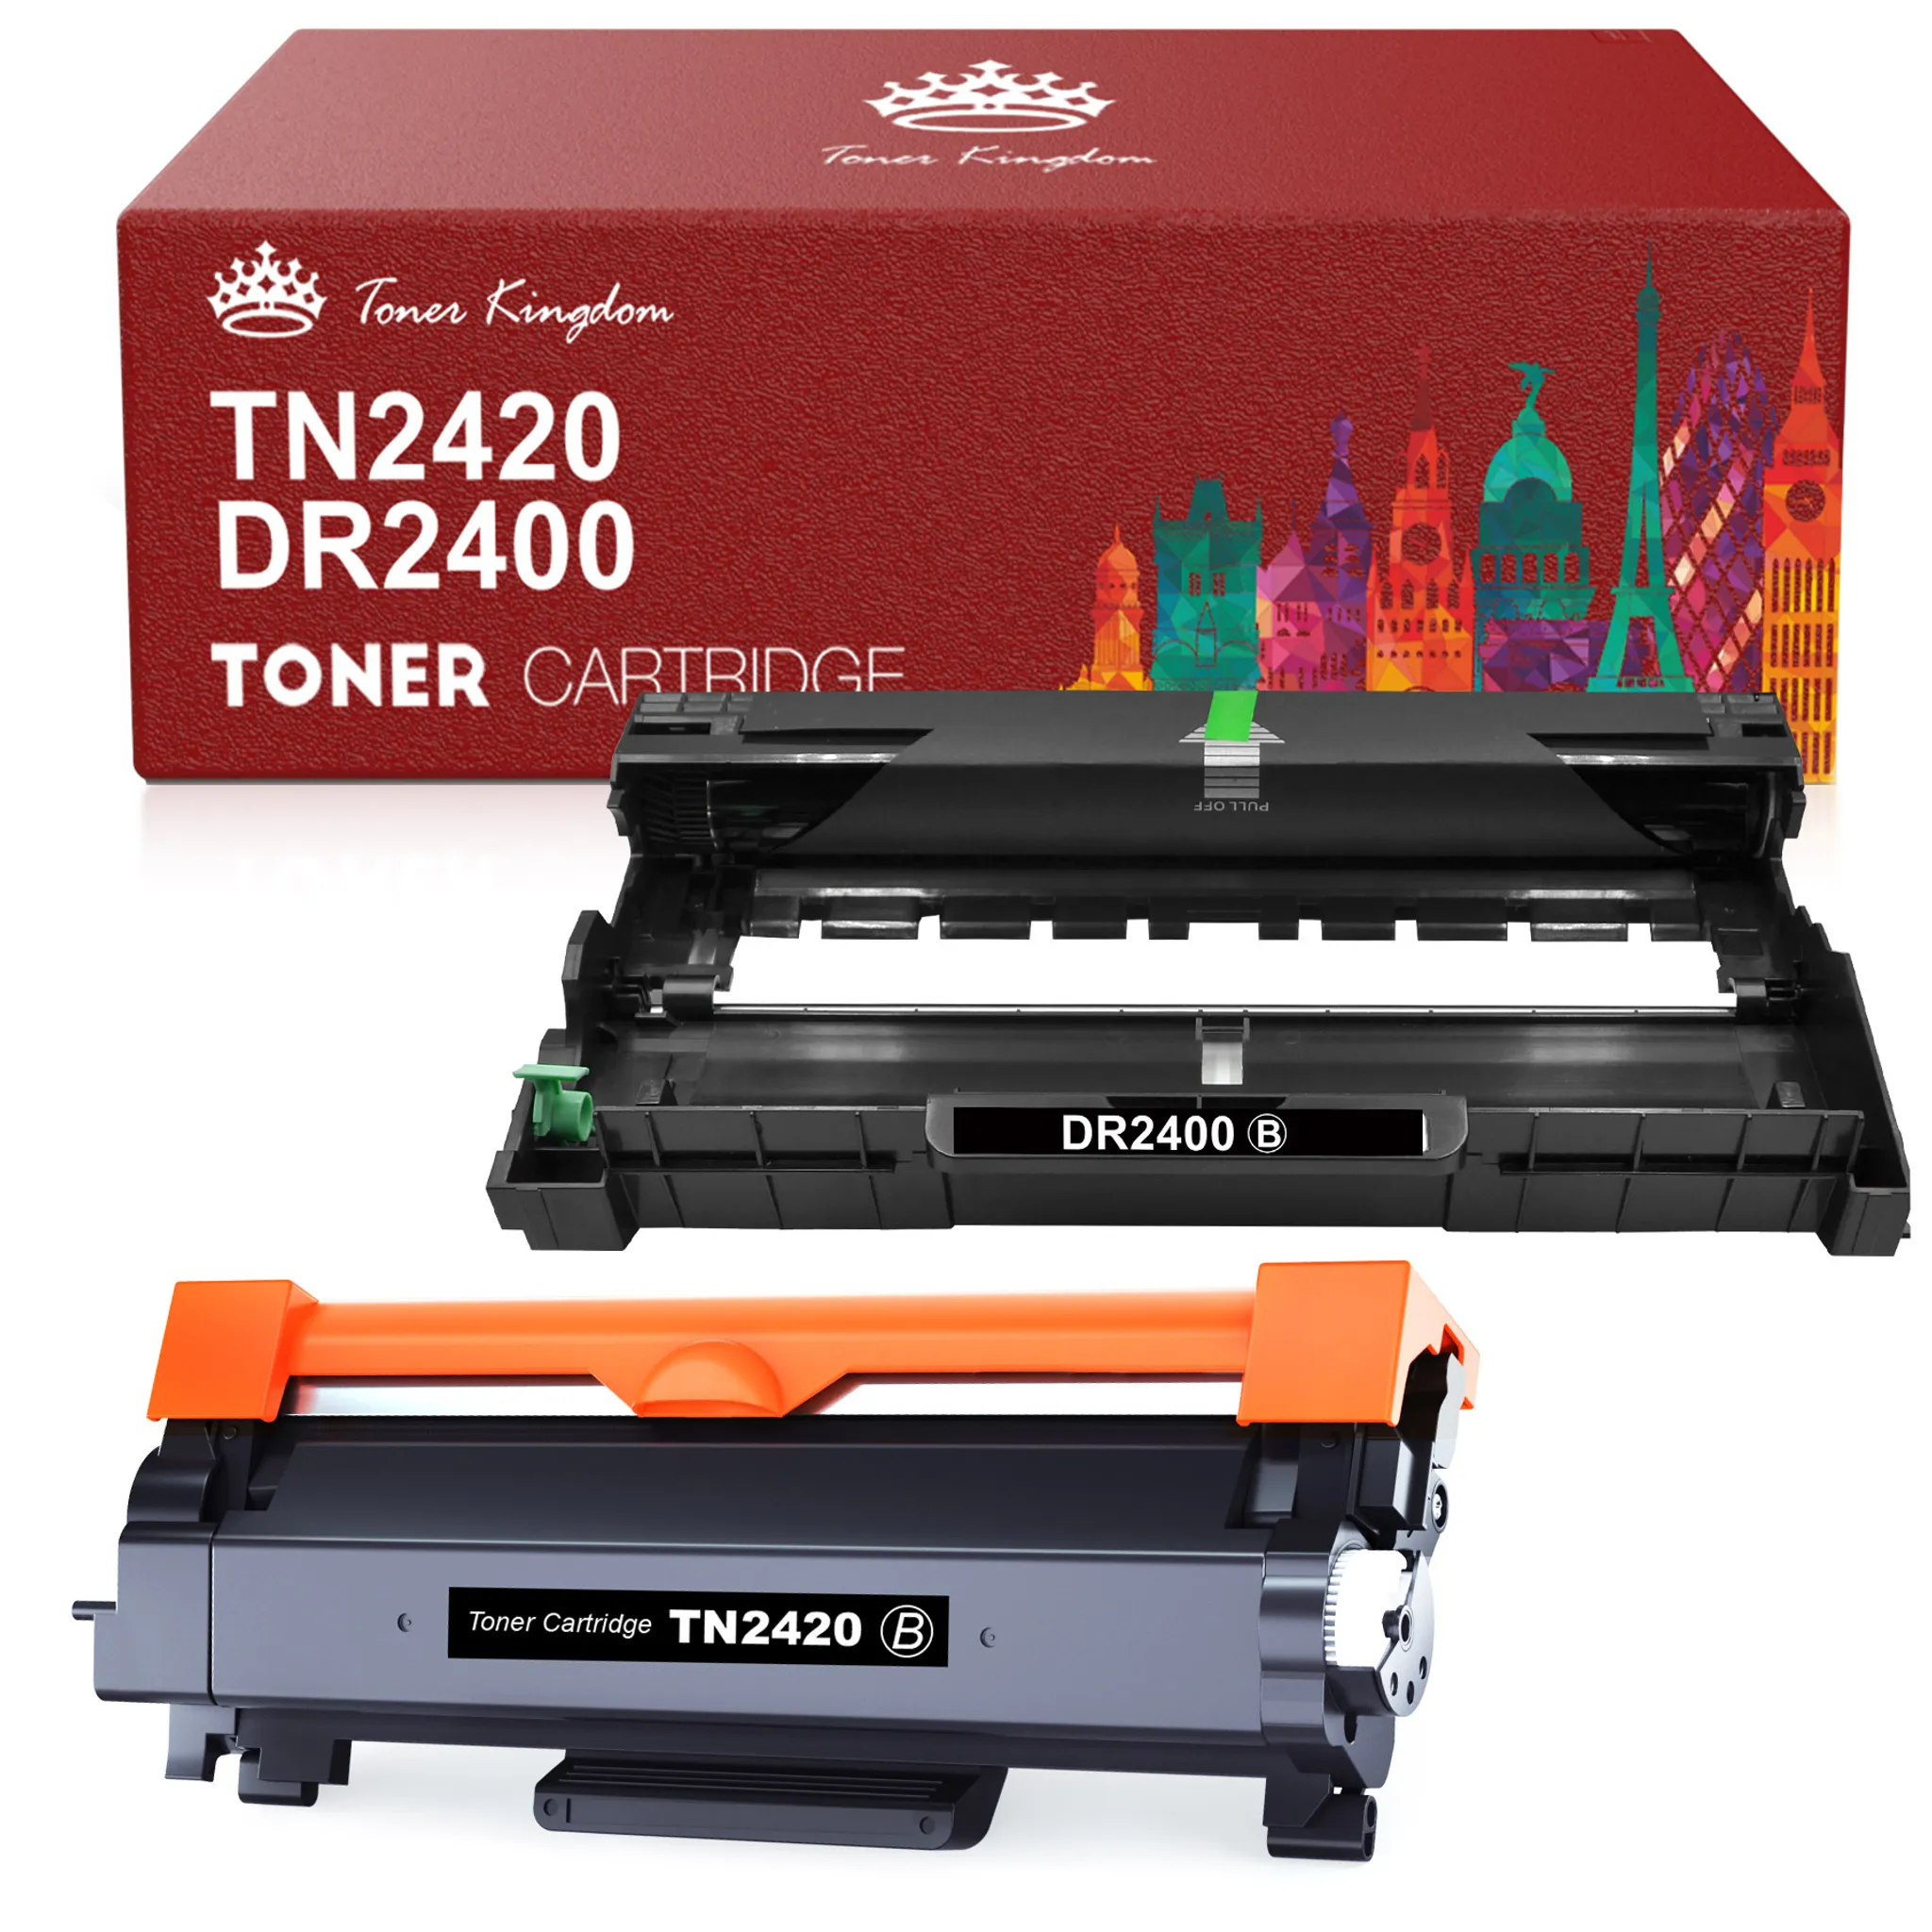 Toner Kingdom Tonerpatrone TN 2420 TN-2410 für Brother HL-L2310D DCP-L2510D  MFC-L2710DN